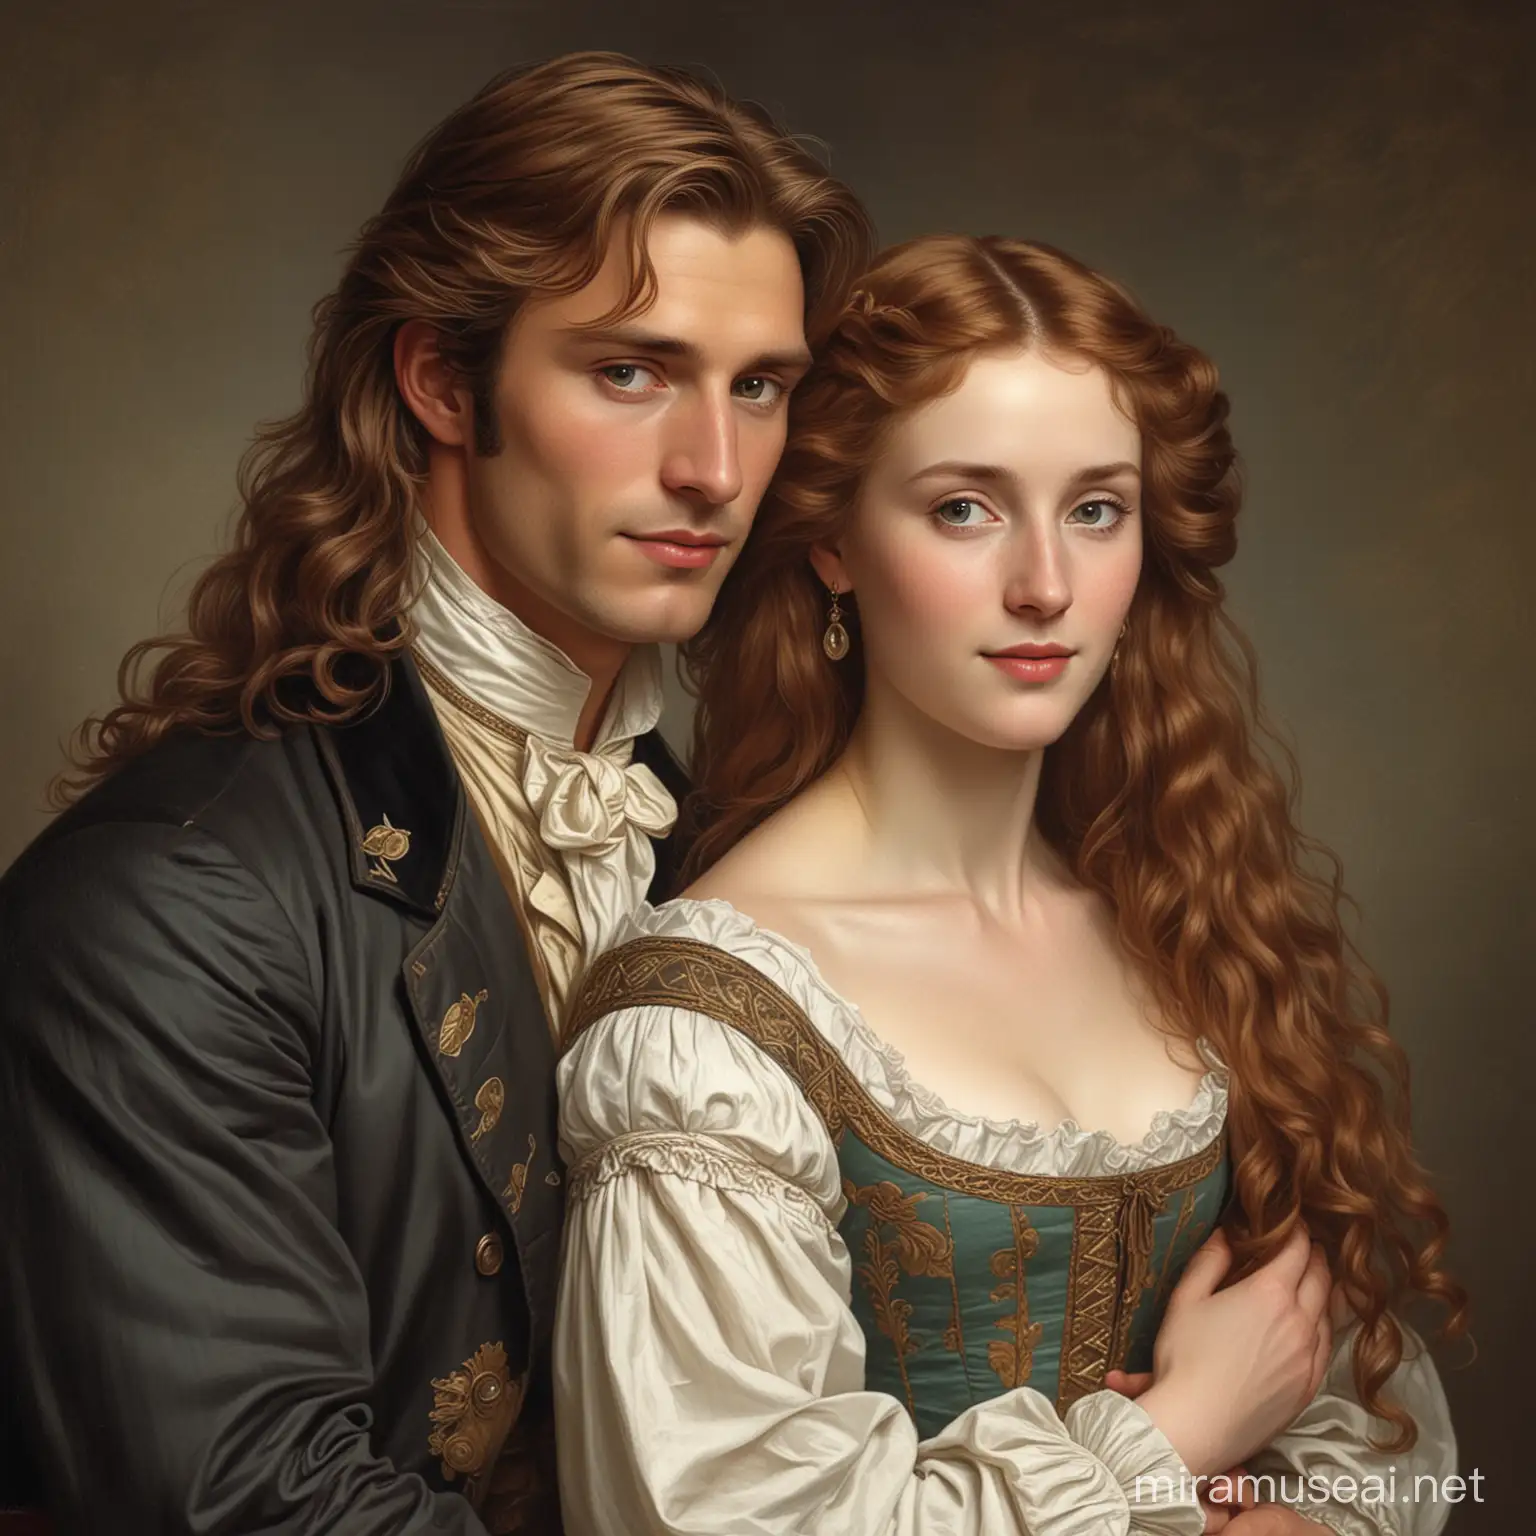 

hombre noble de cabello largo y castaño, tez blanca; junto a una hermosa mujer abrazados. De 1840